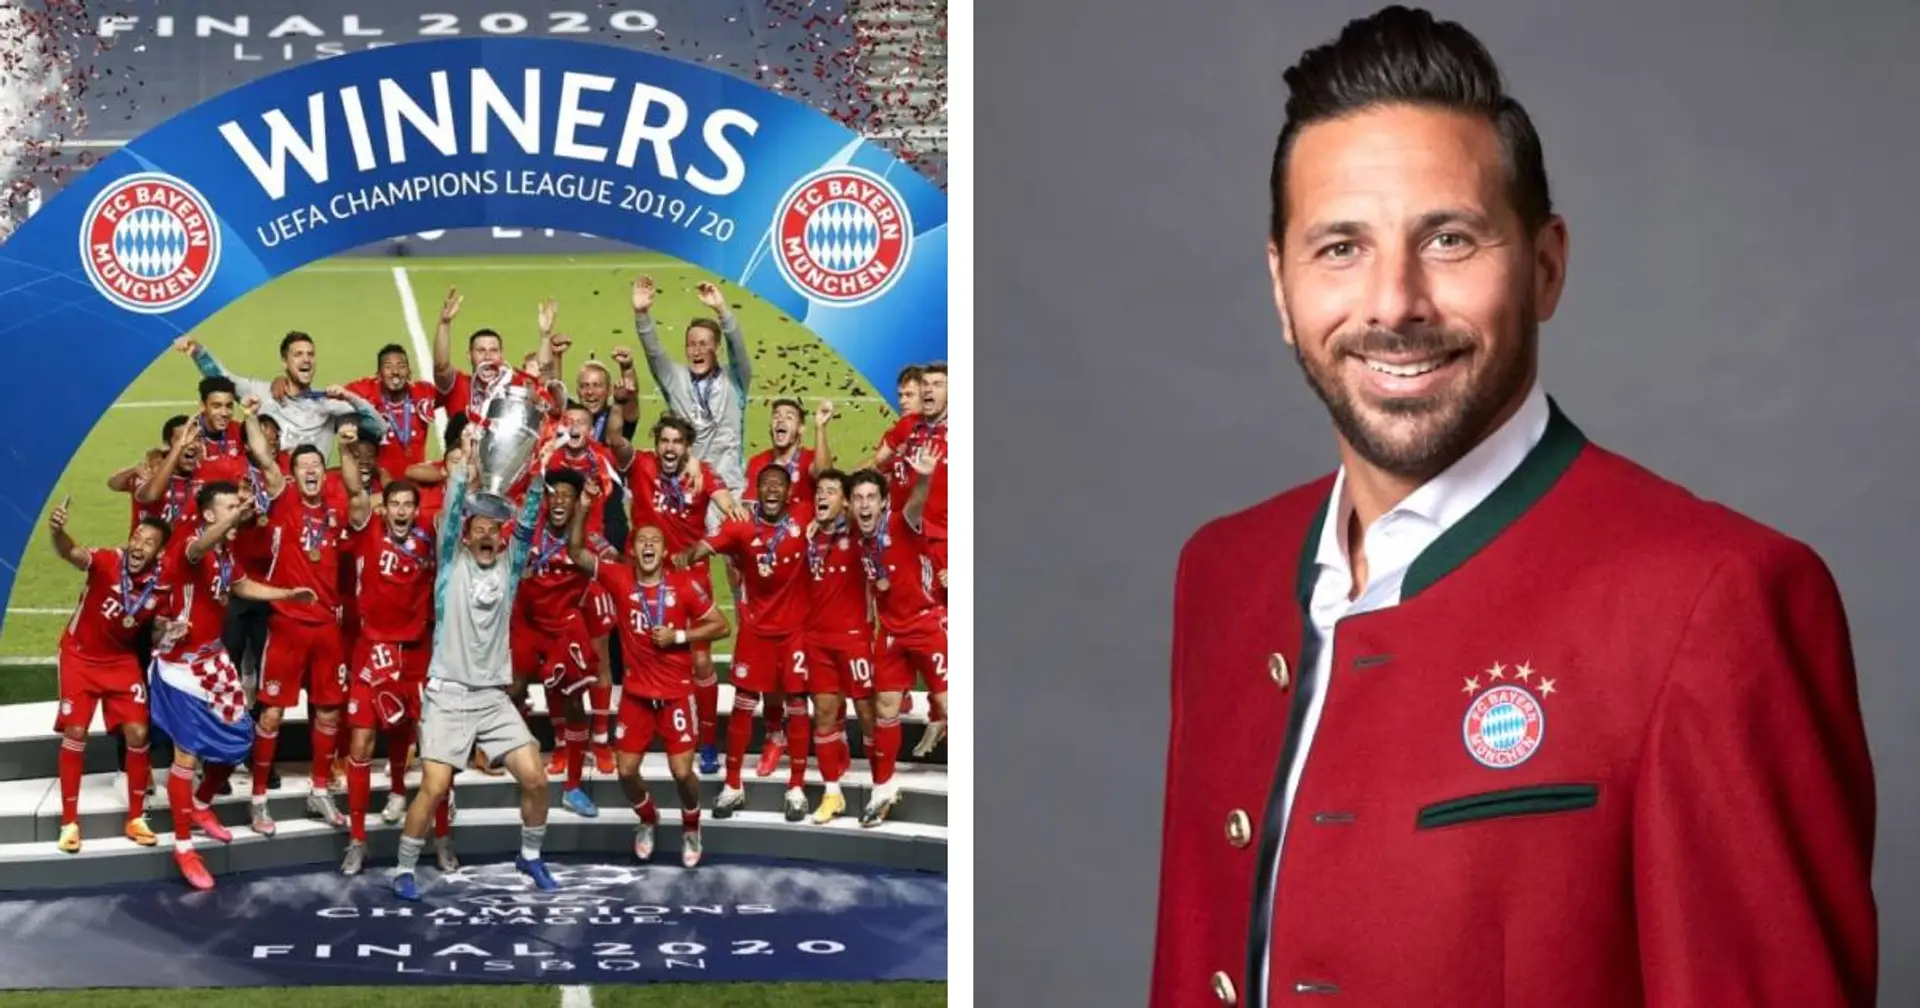 Pizarro ist begeistert davon, was die Bayern trotz vieler Veränderungen erreicht haben